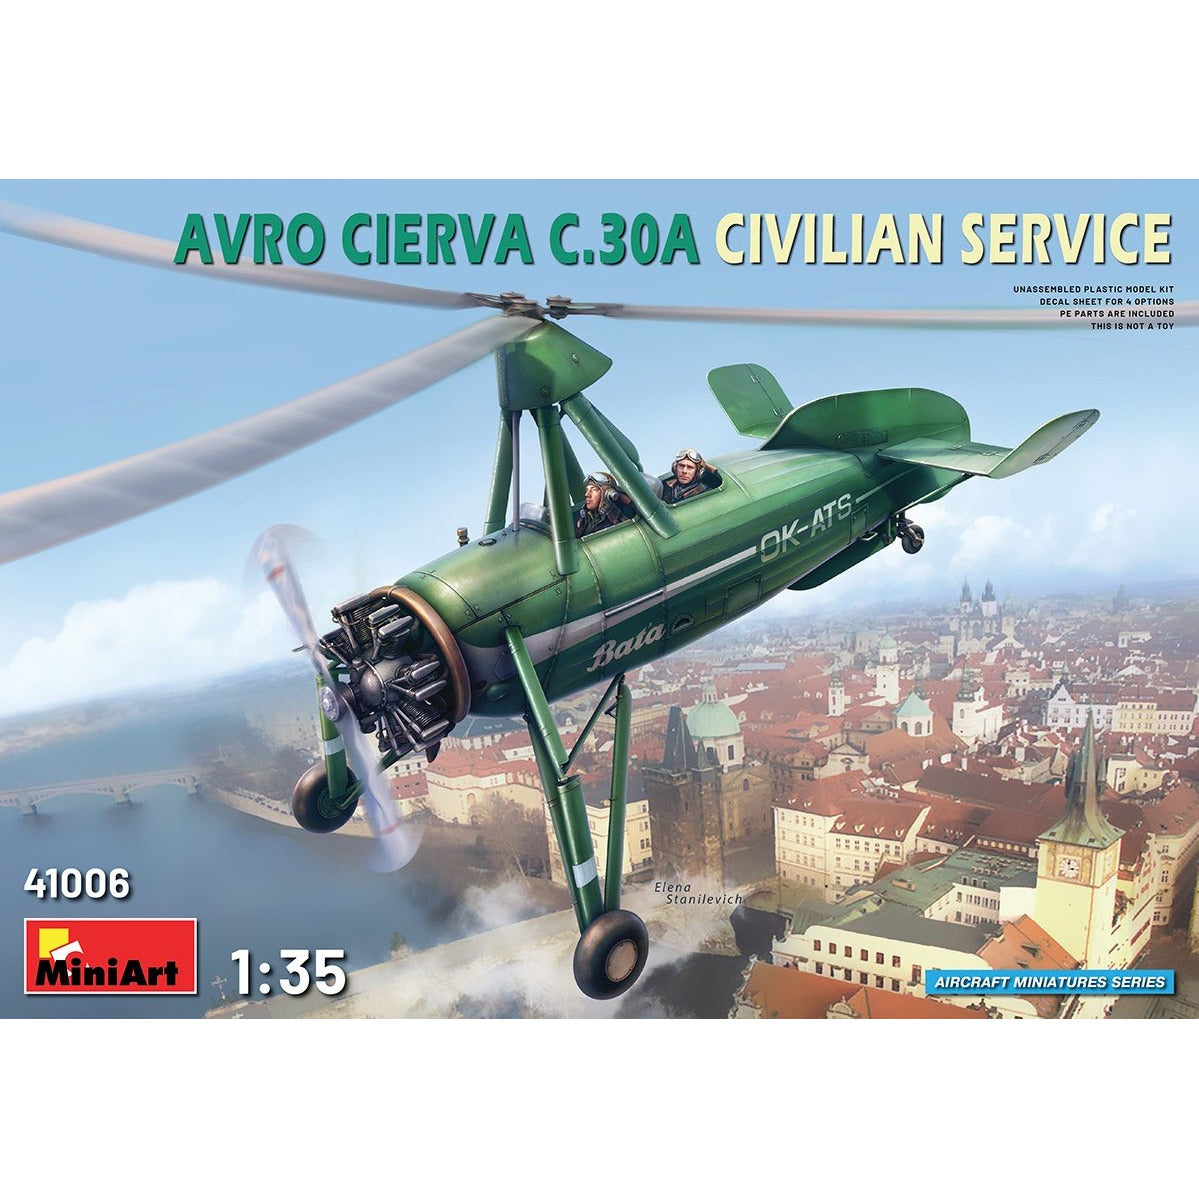 AVRO Cierva C.30A Civilian Service 1/35 by Miniart